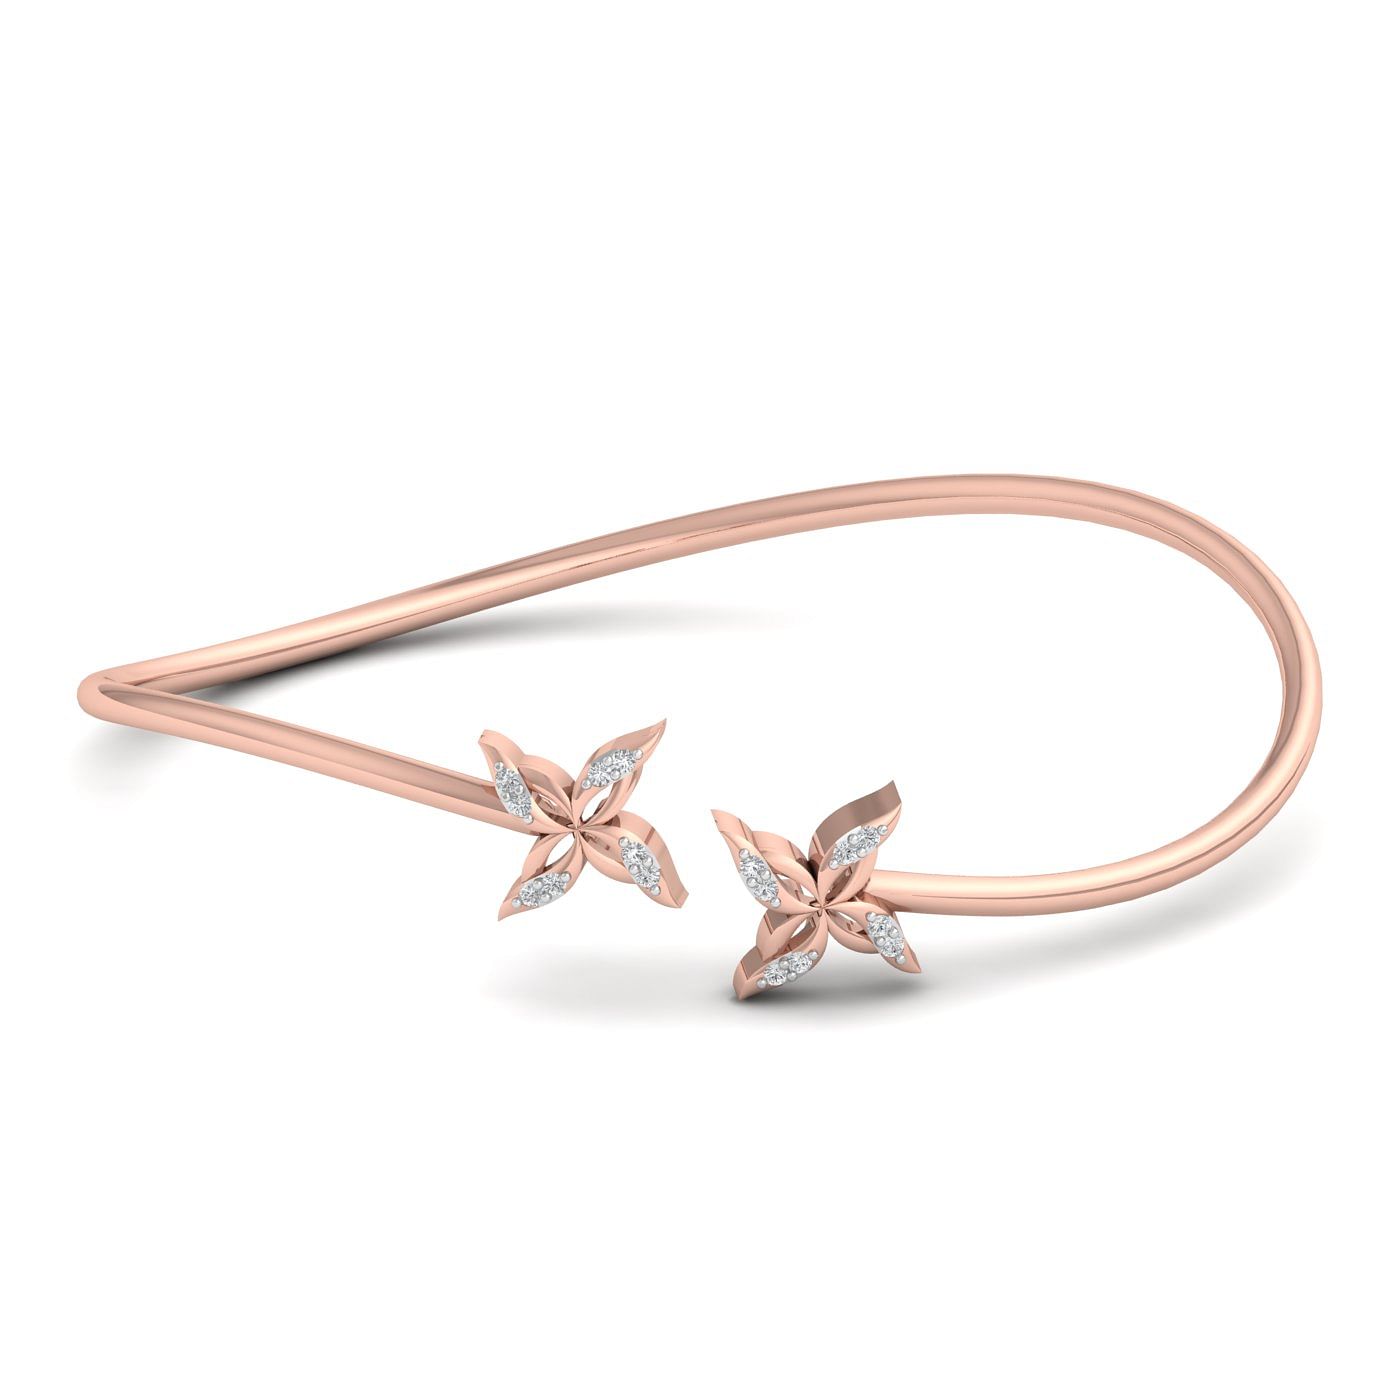 Rose gold Juliana Diamond Bracelet design for women